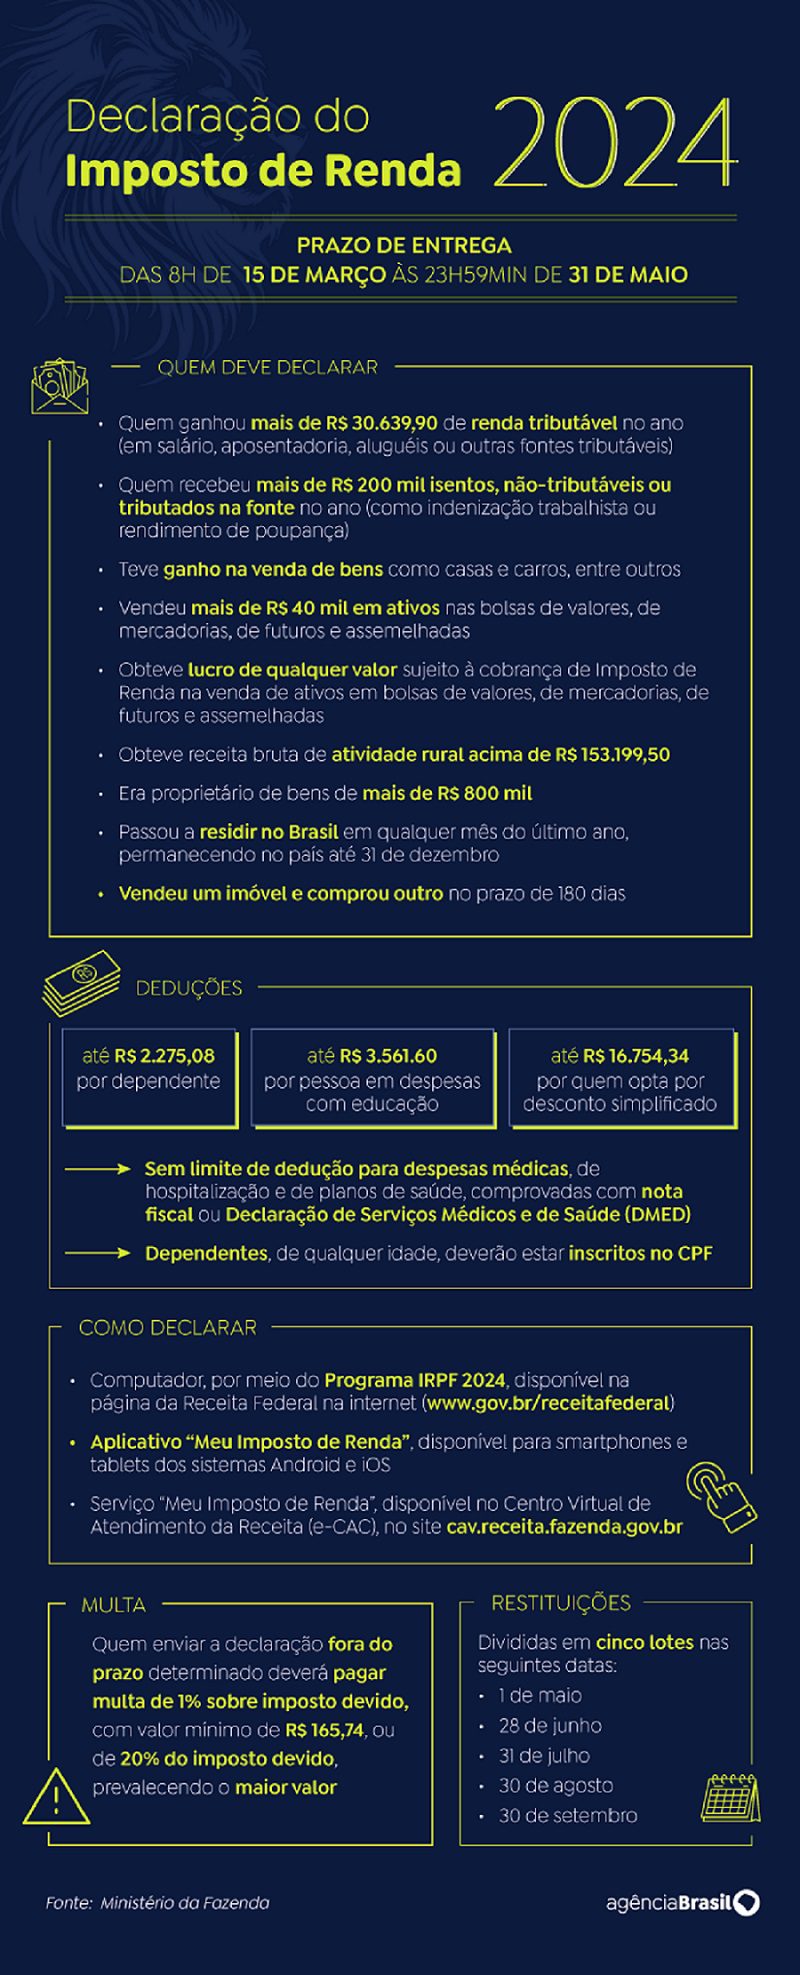 Imposto de Renda 2024 (Reprodução, Agência Brasil)